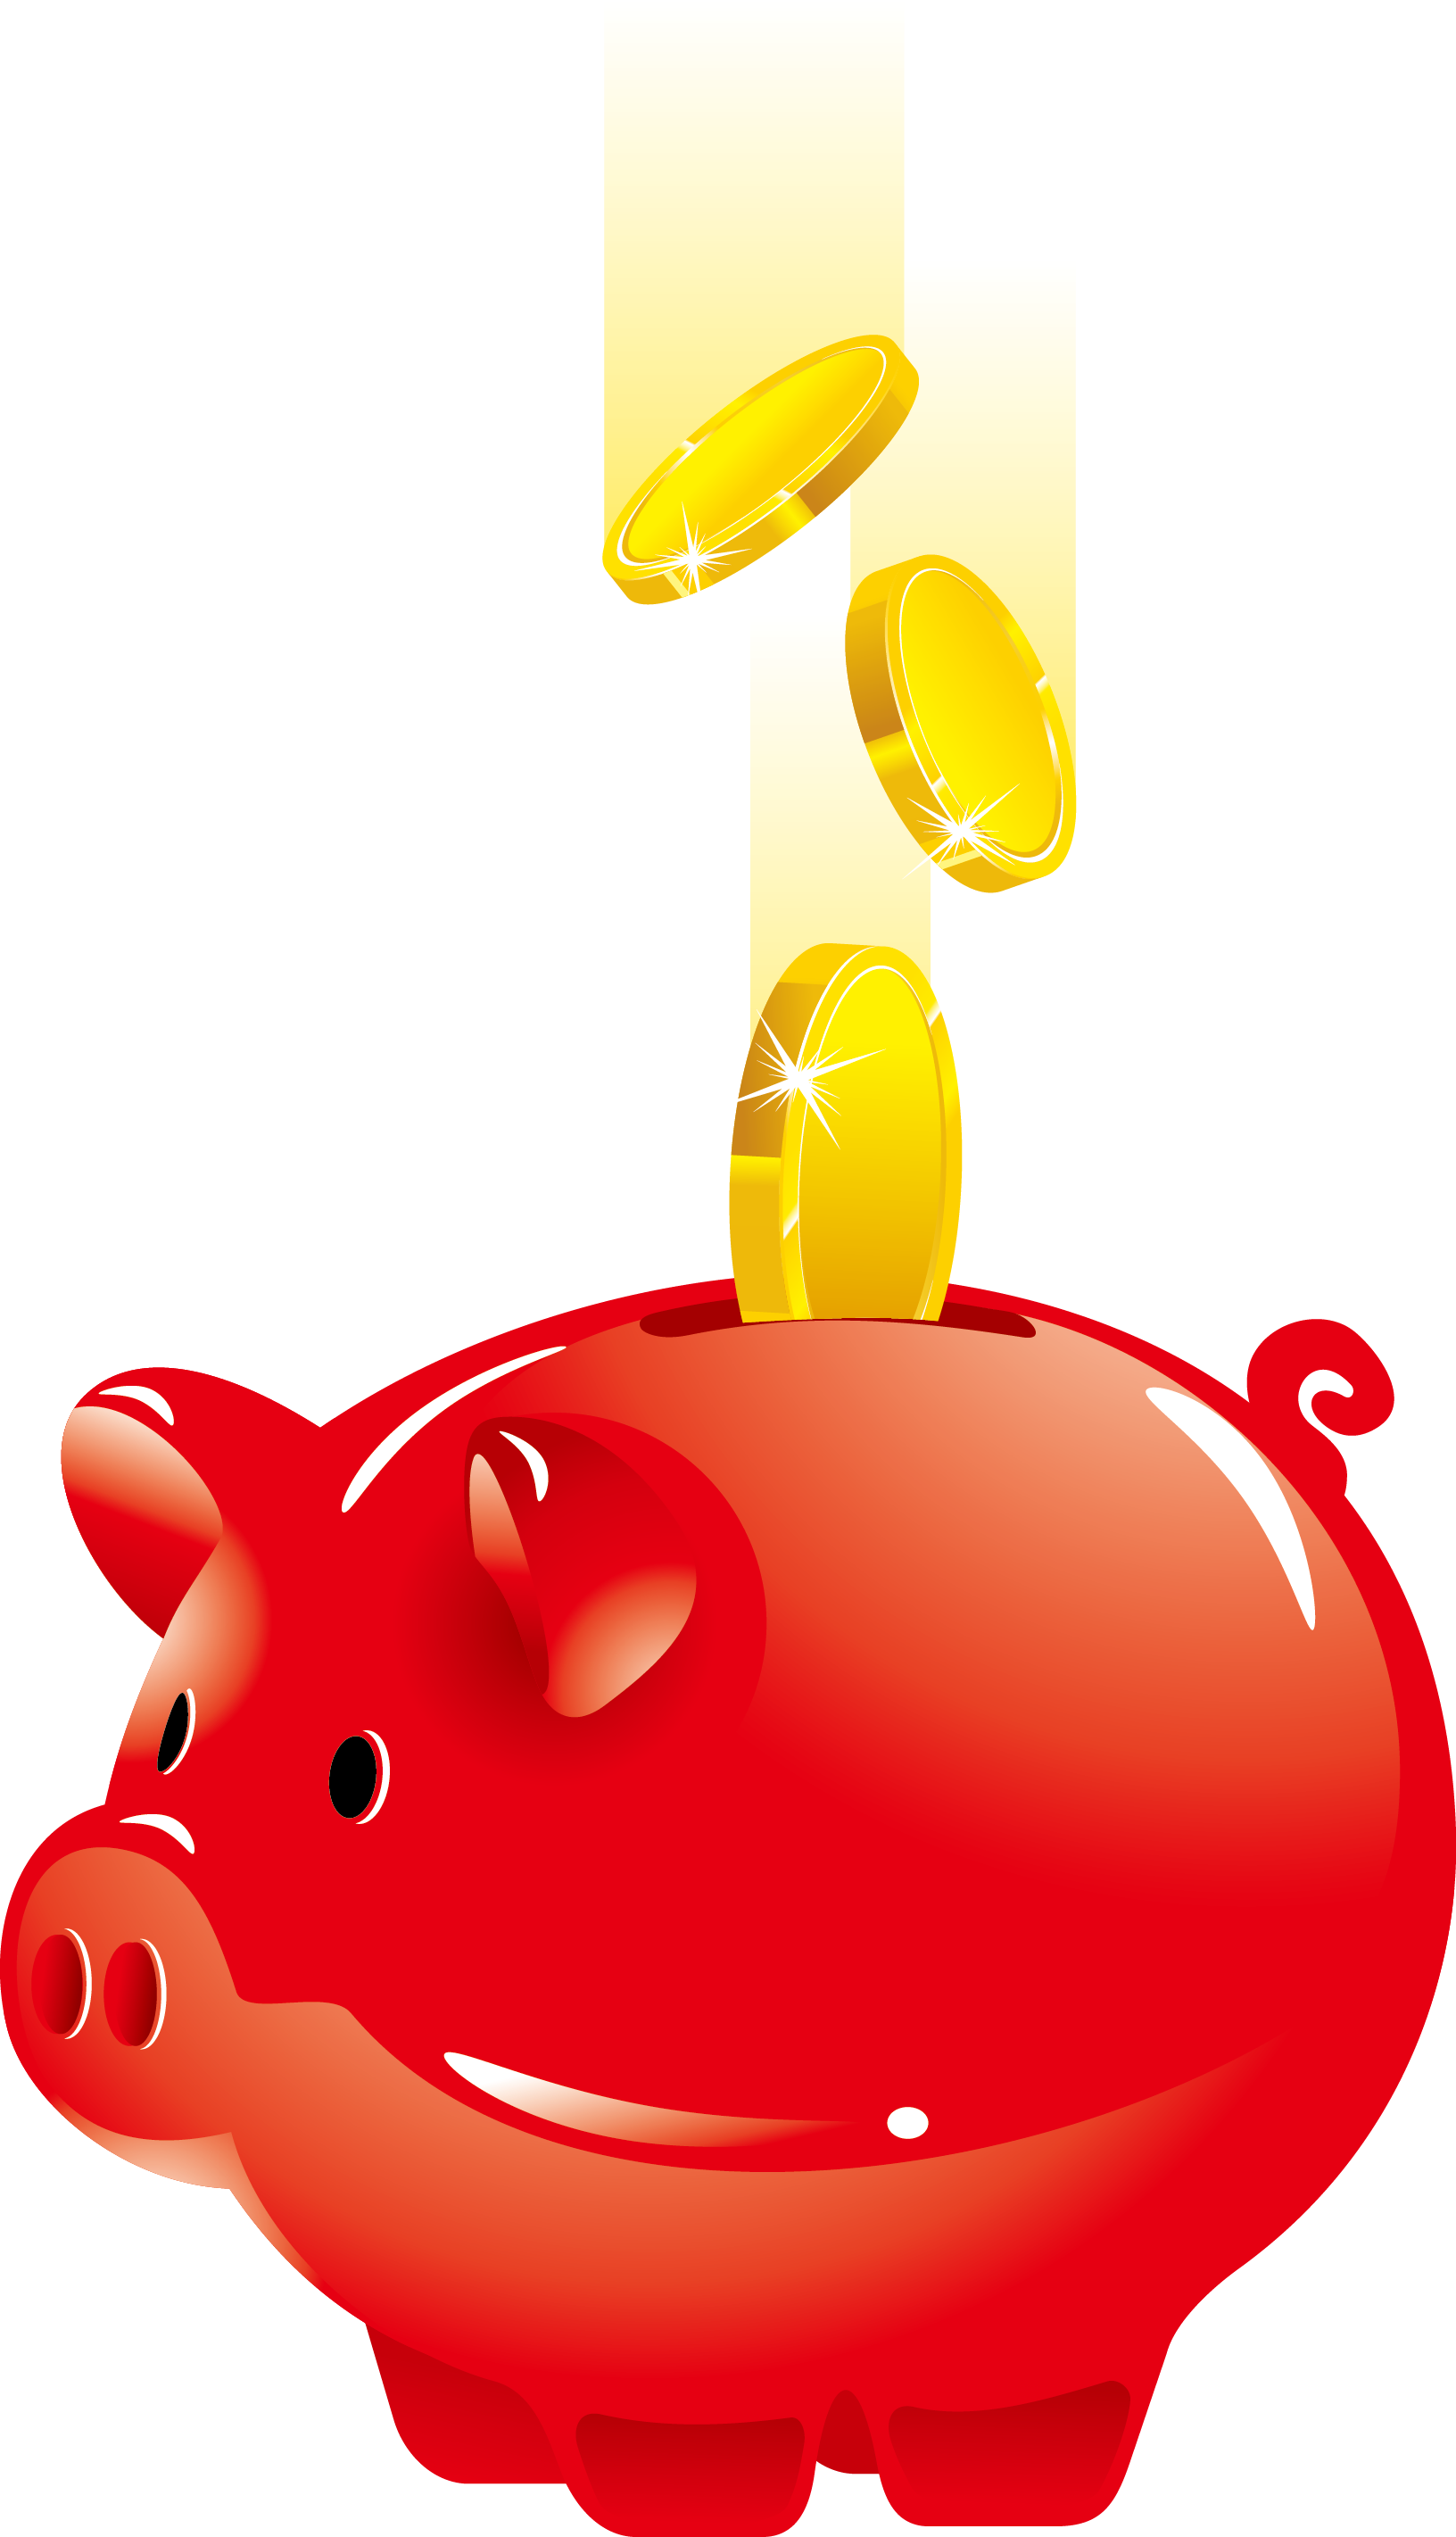 Piggy Bank Saving Money - Red Piggy Bank (1632x2843)